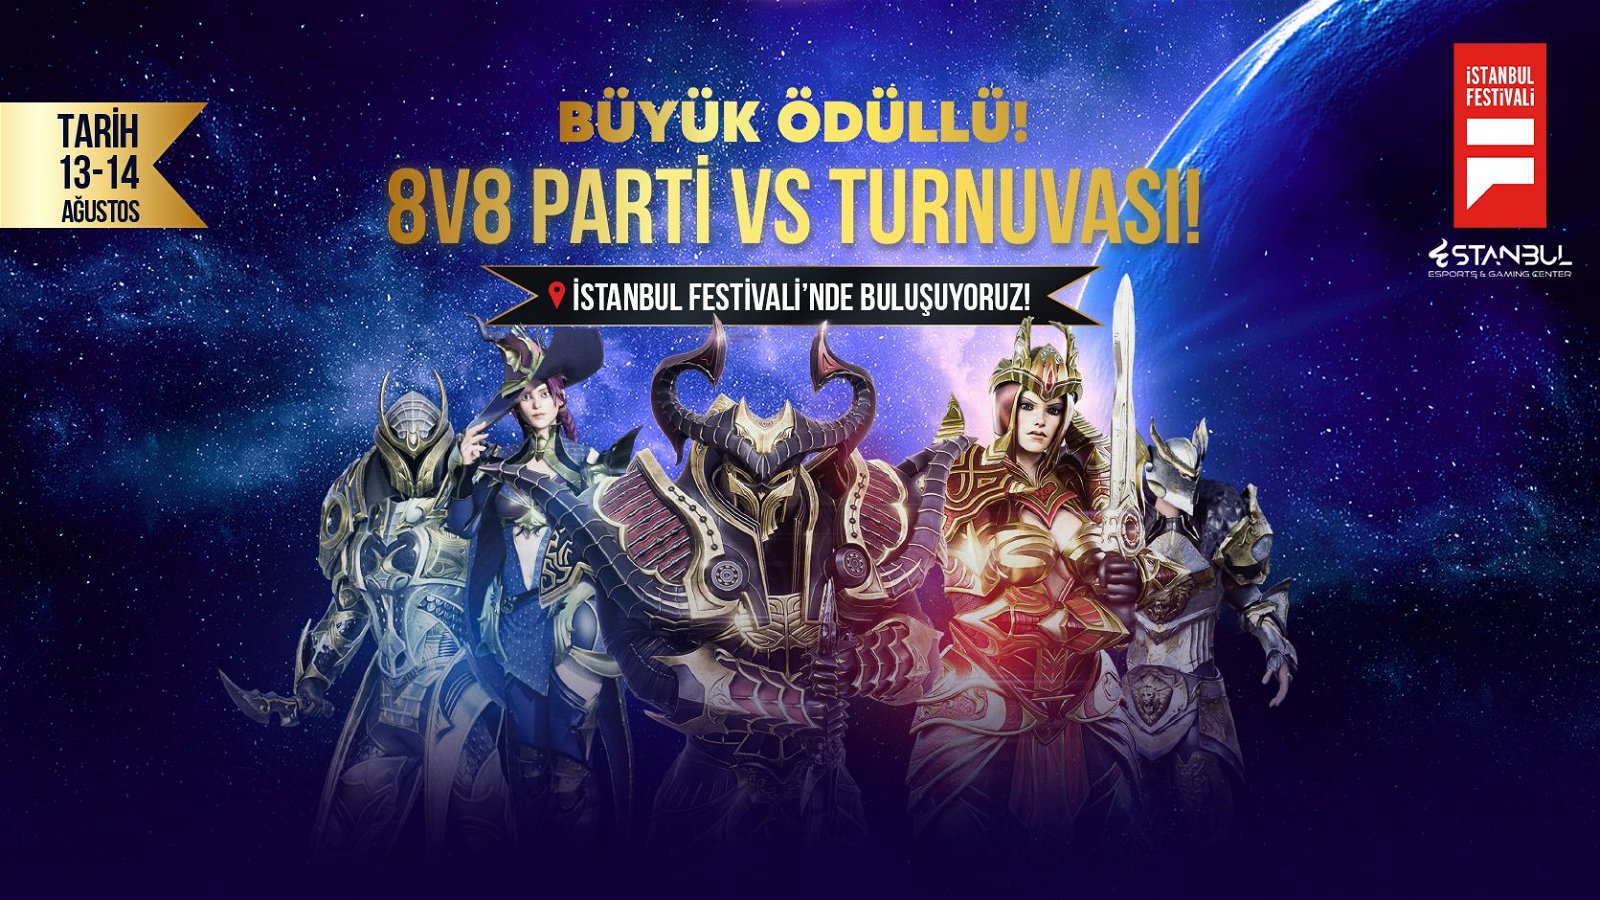 İstanbul Festivali - Büyük Ödüllü Party Vs Turnuvası Başlıyor!